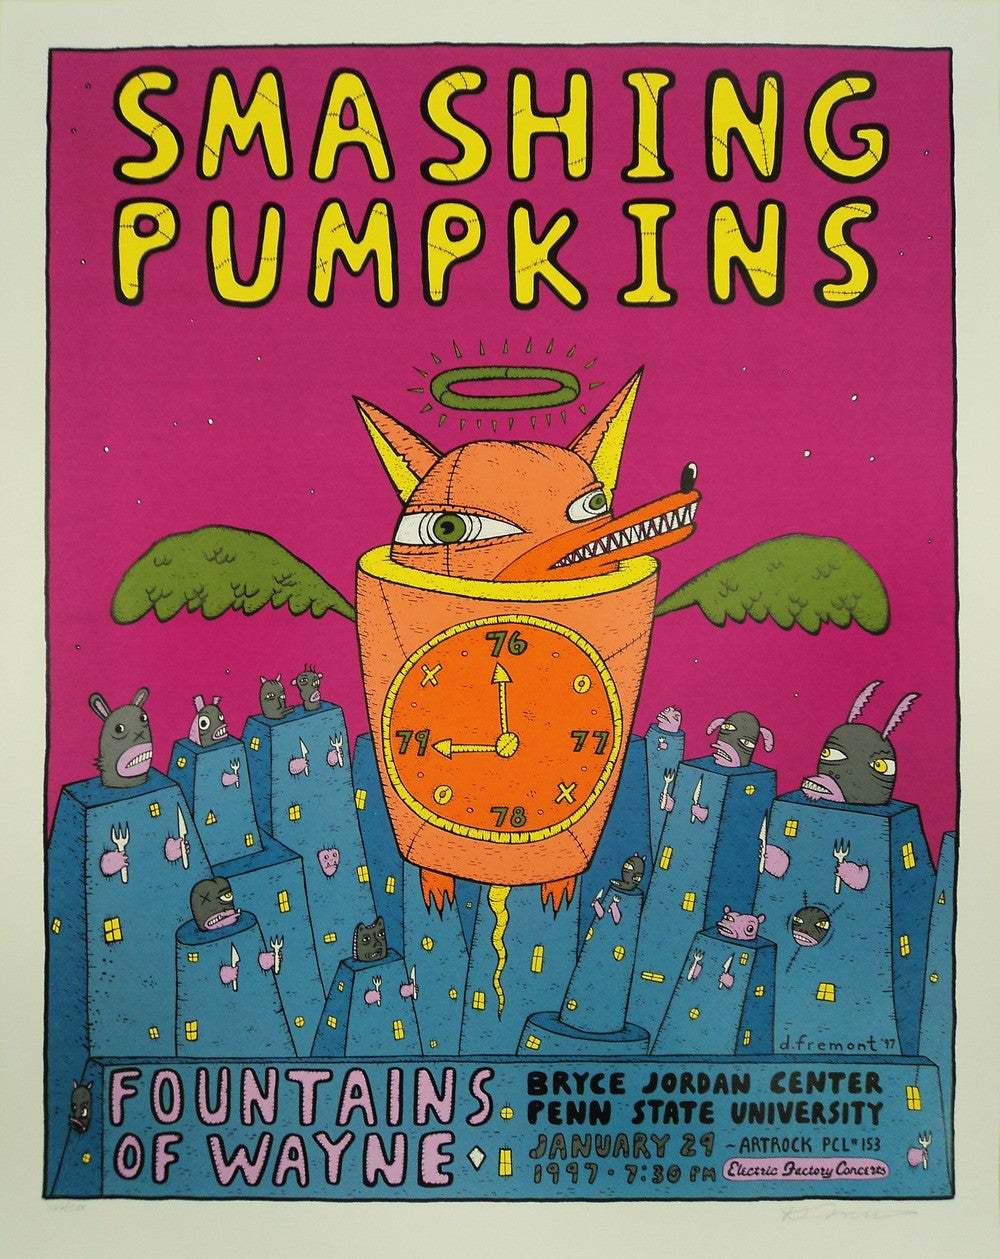 David Fremont - 1997 - Smashing Pumpkins Concert Poster